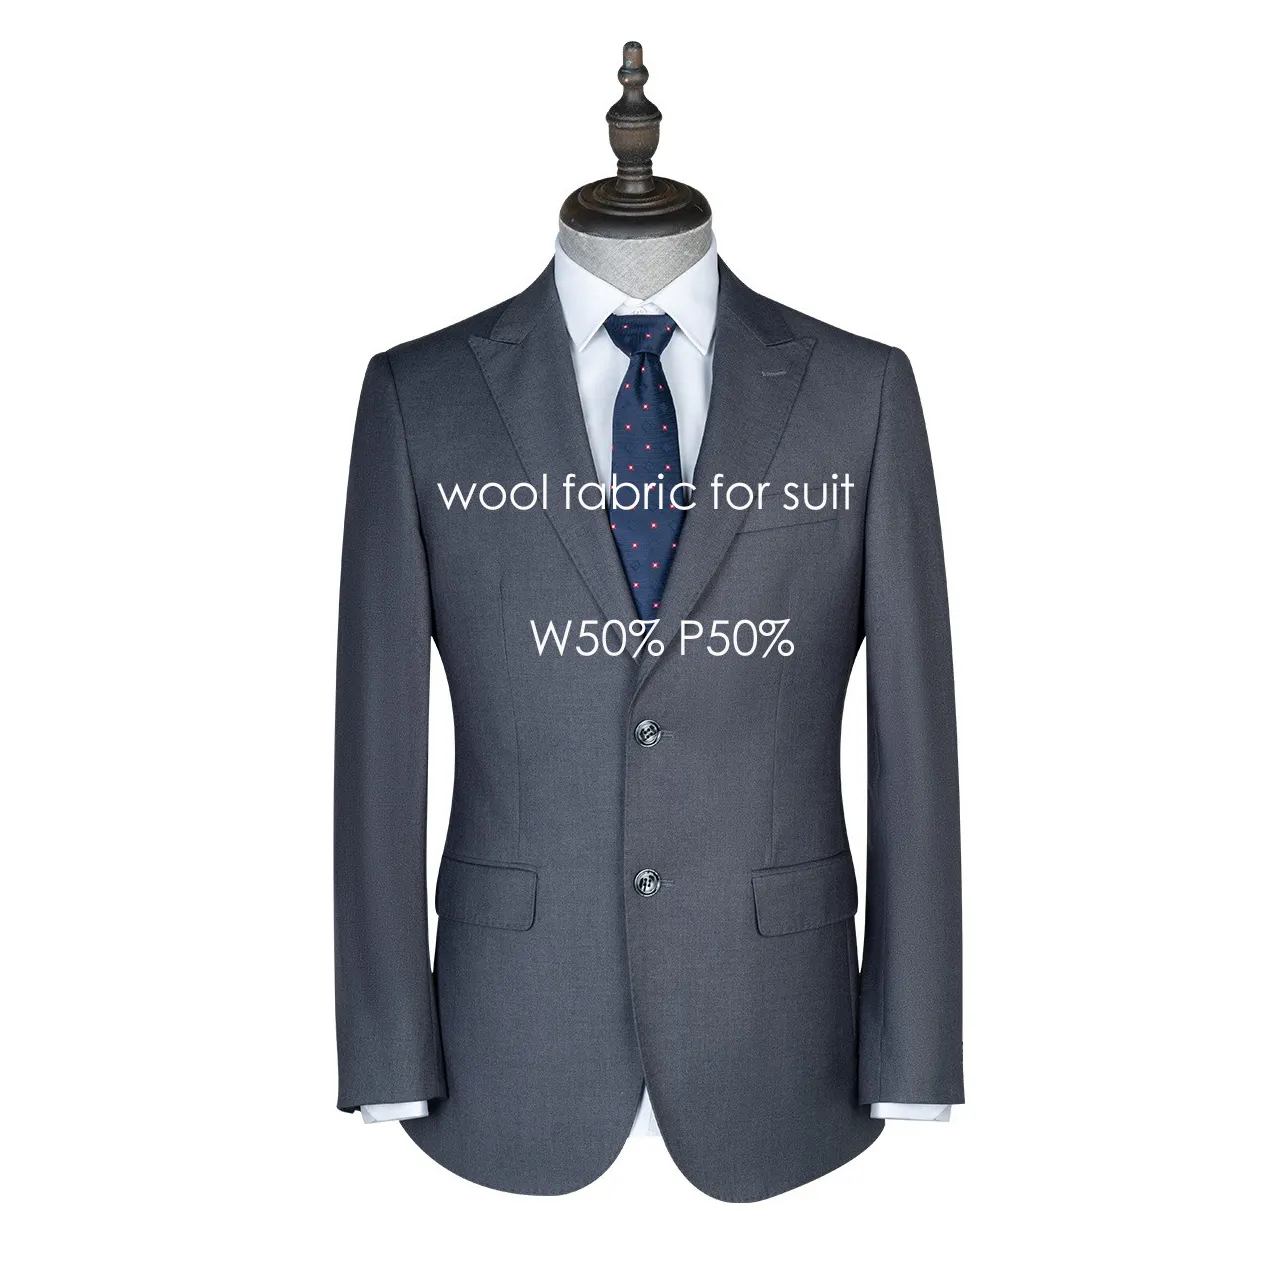 FLA 50 yün 50 polyester kamgarn merinos lüks yün/Polyester İtalyan takım elbise kumaşı takım elbise kumaşı erkekler kumaşlar uygun